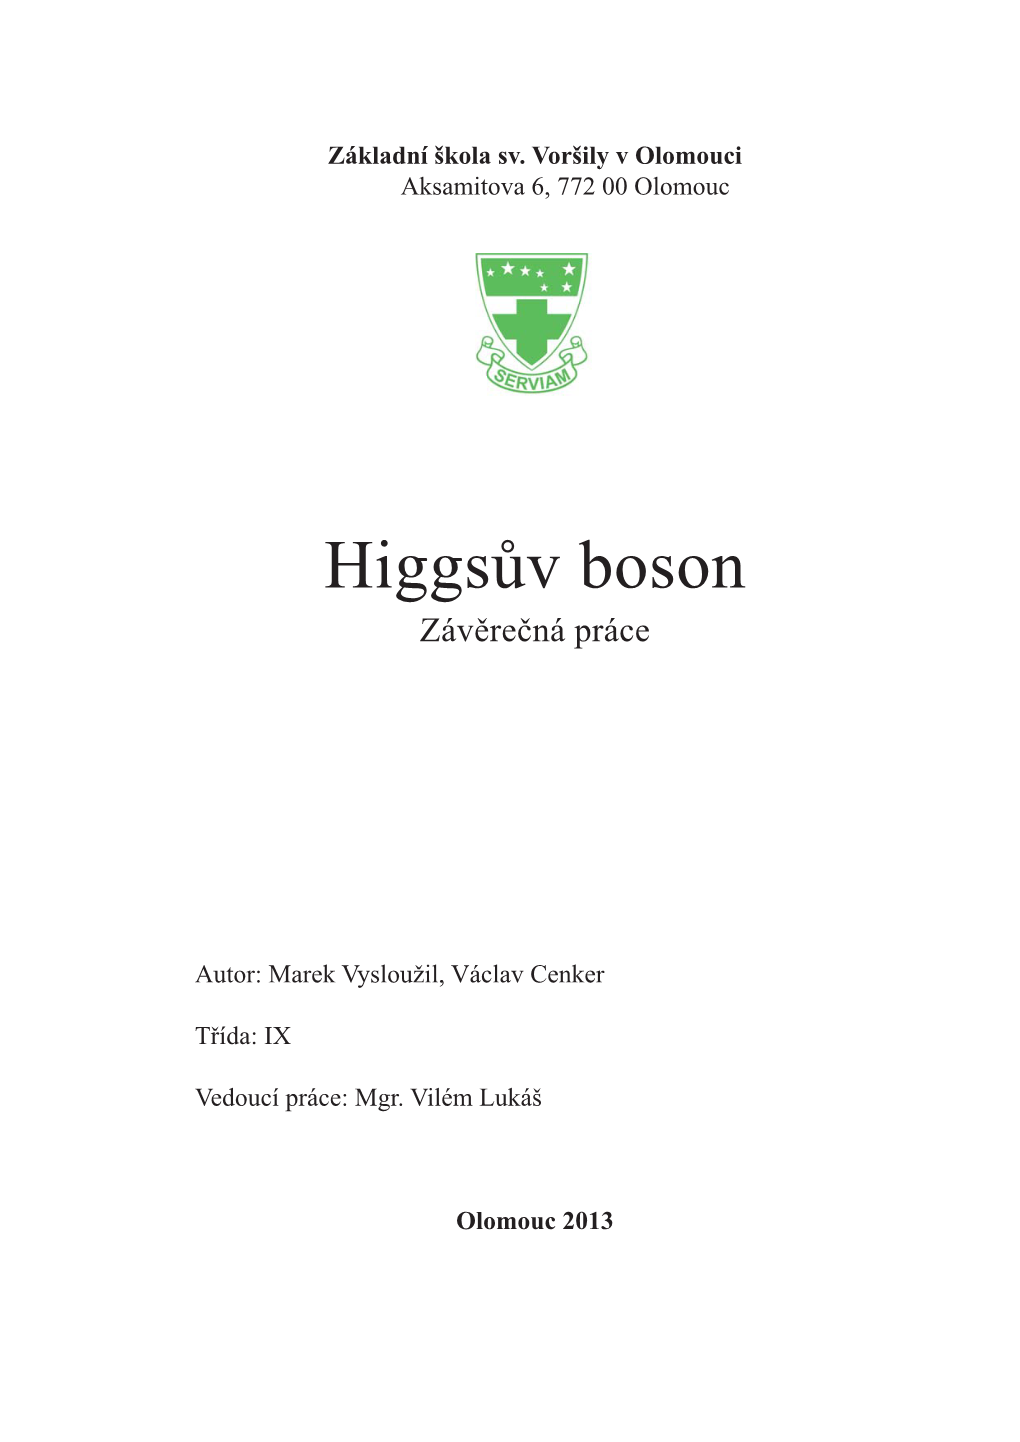 Higgsův Boson Závěrečná Práce